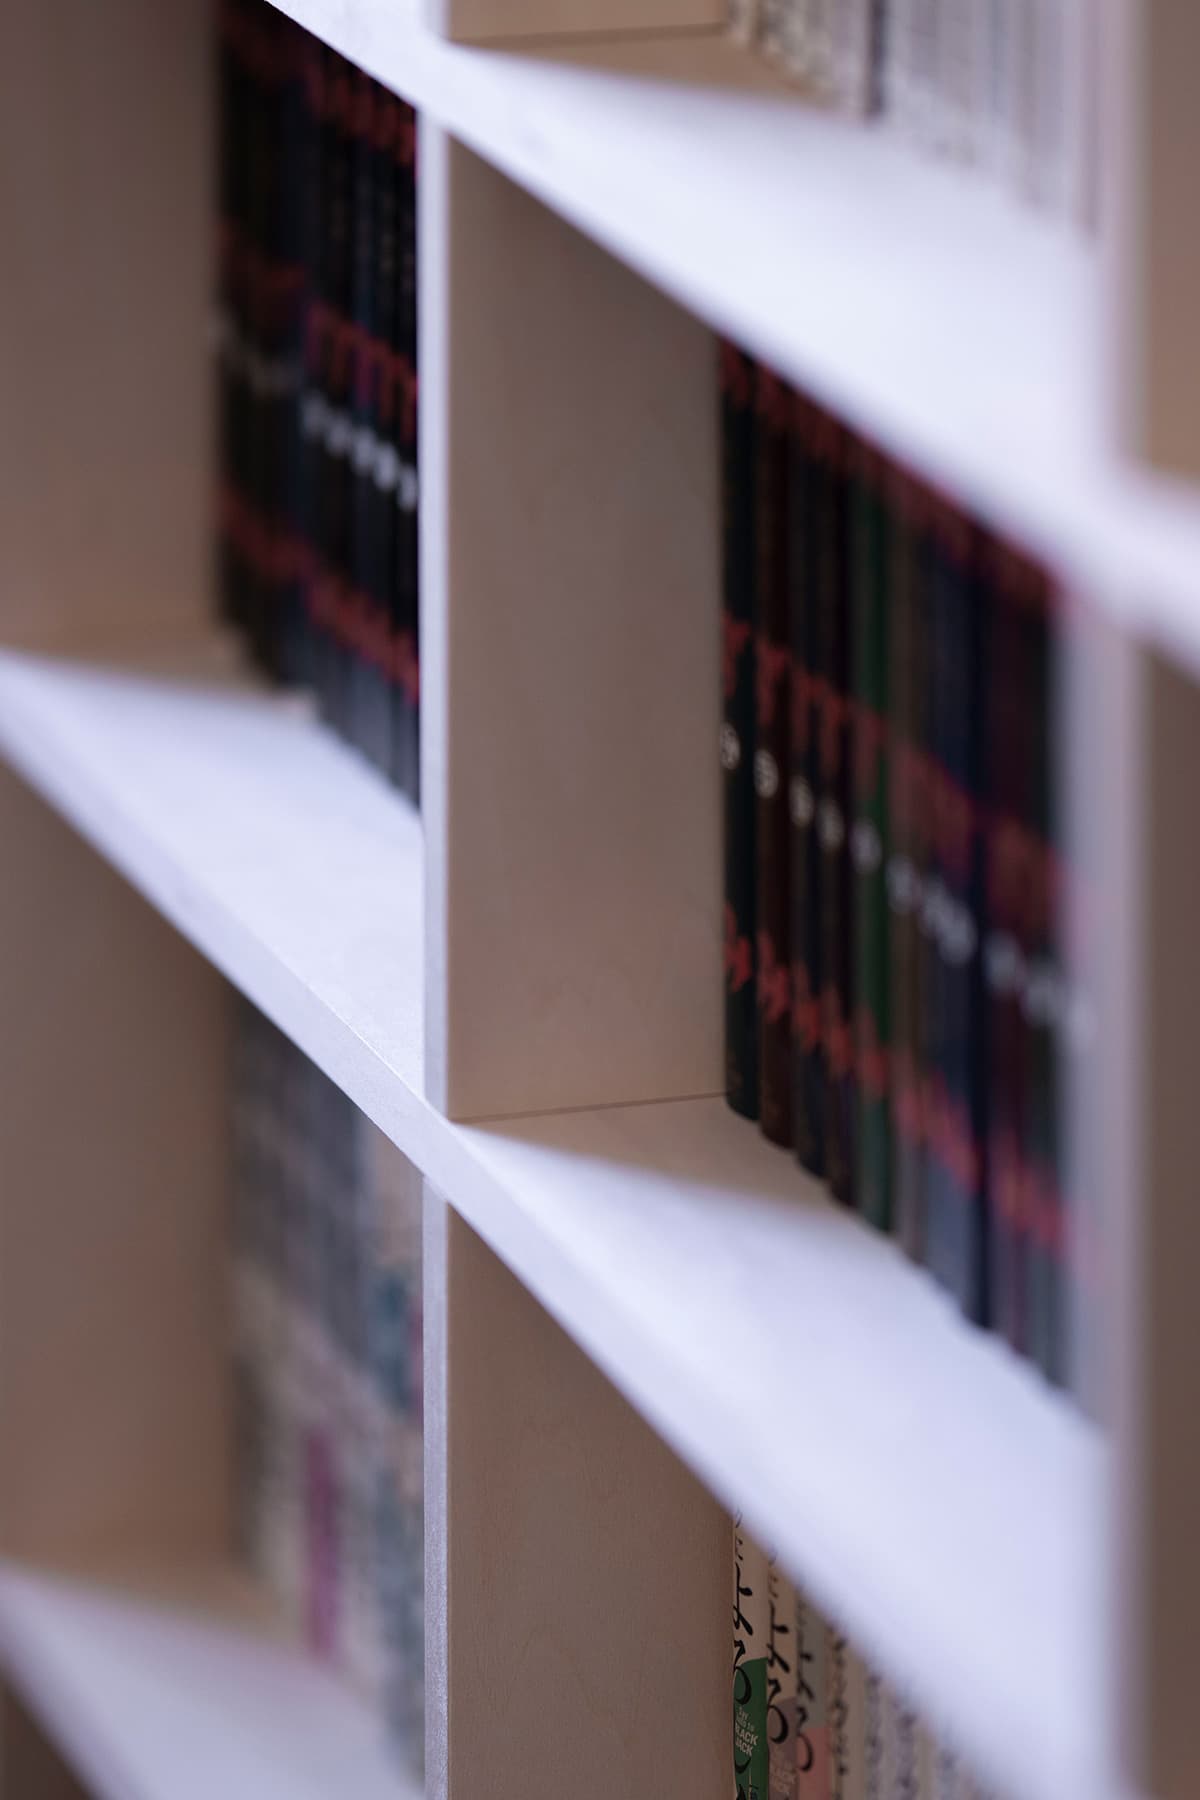 コミック本全集による整然とした本棚 壁一面のコミック本棚 奥行180mm Shelf マルゲリータ使用事例